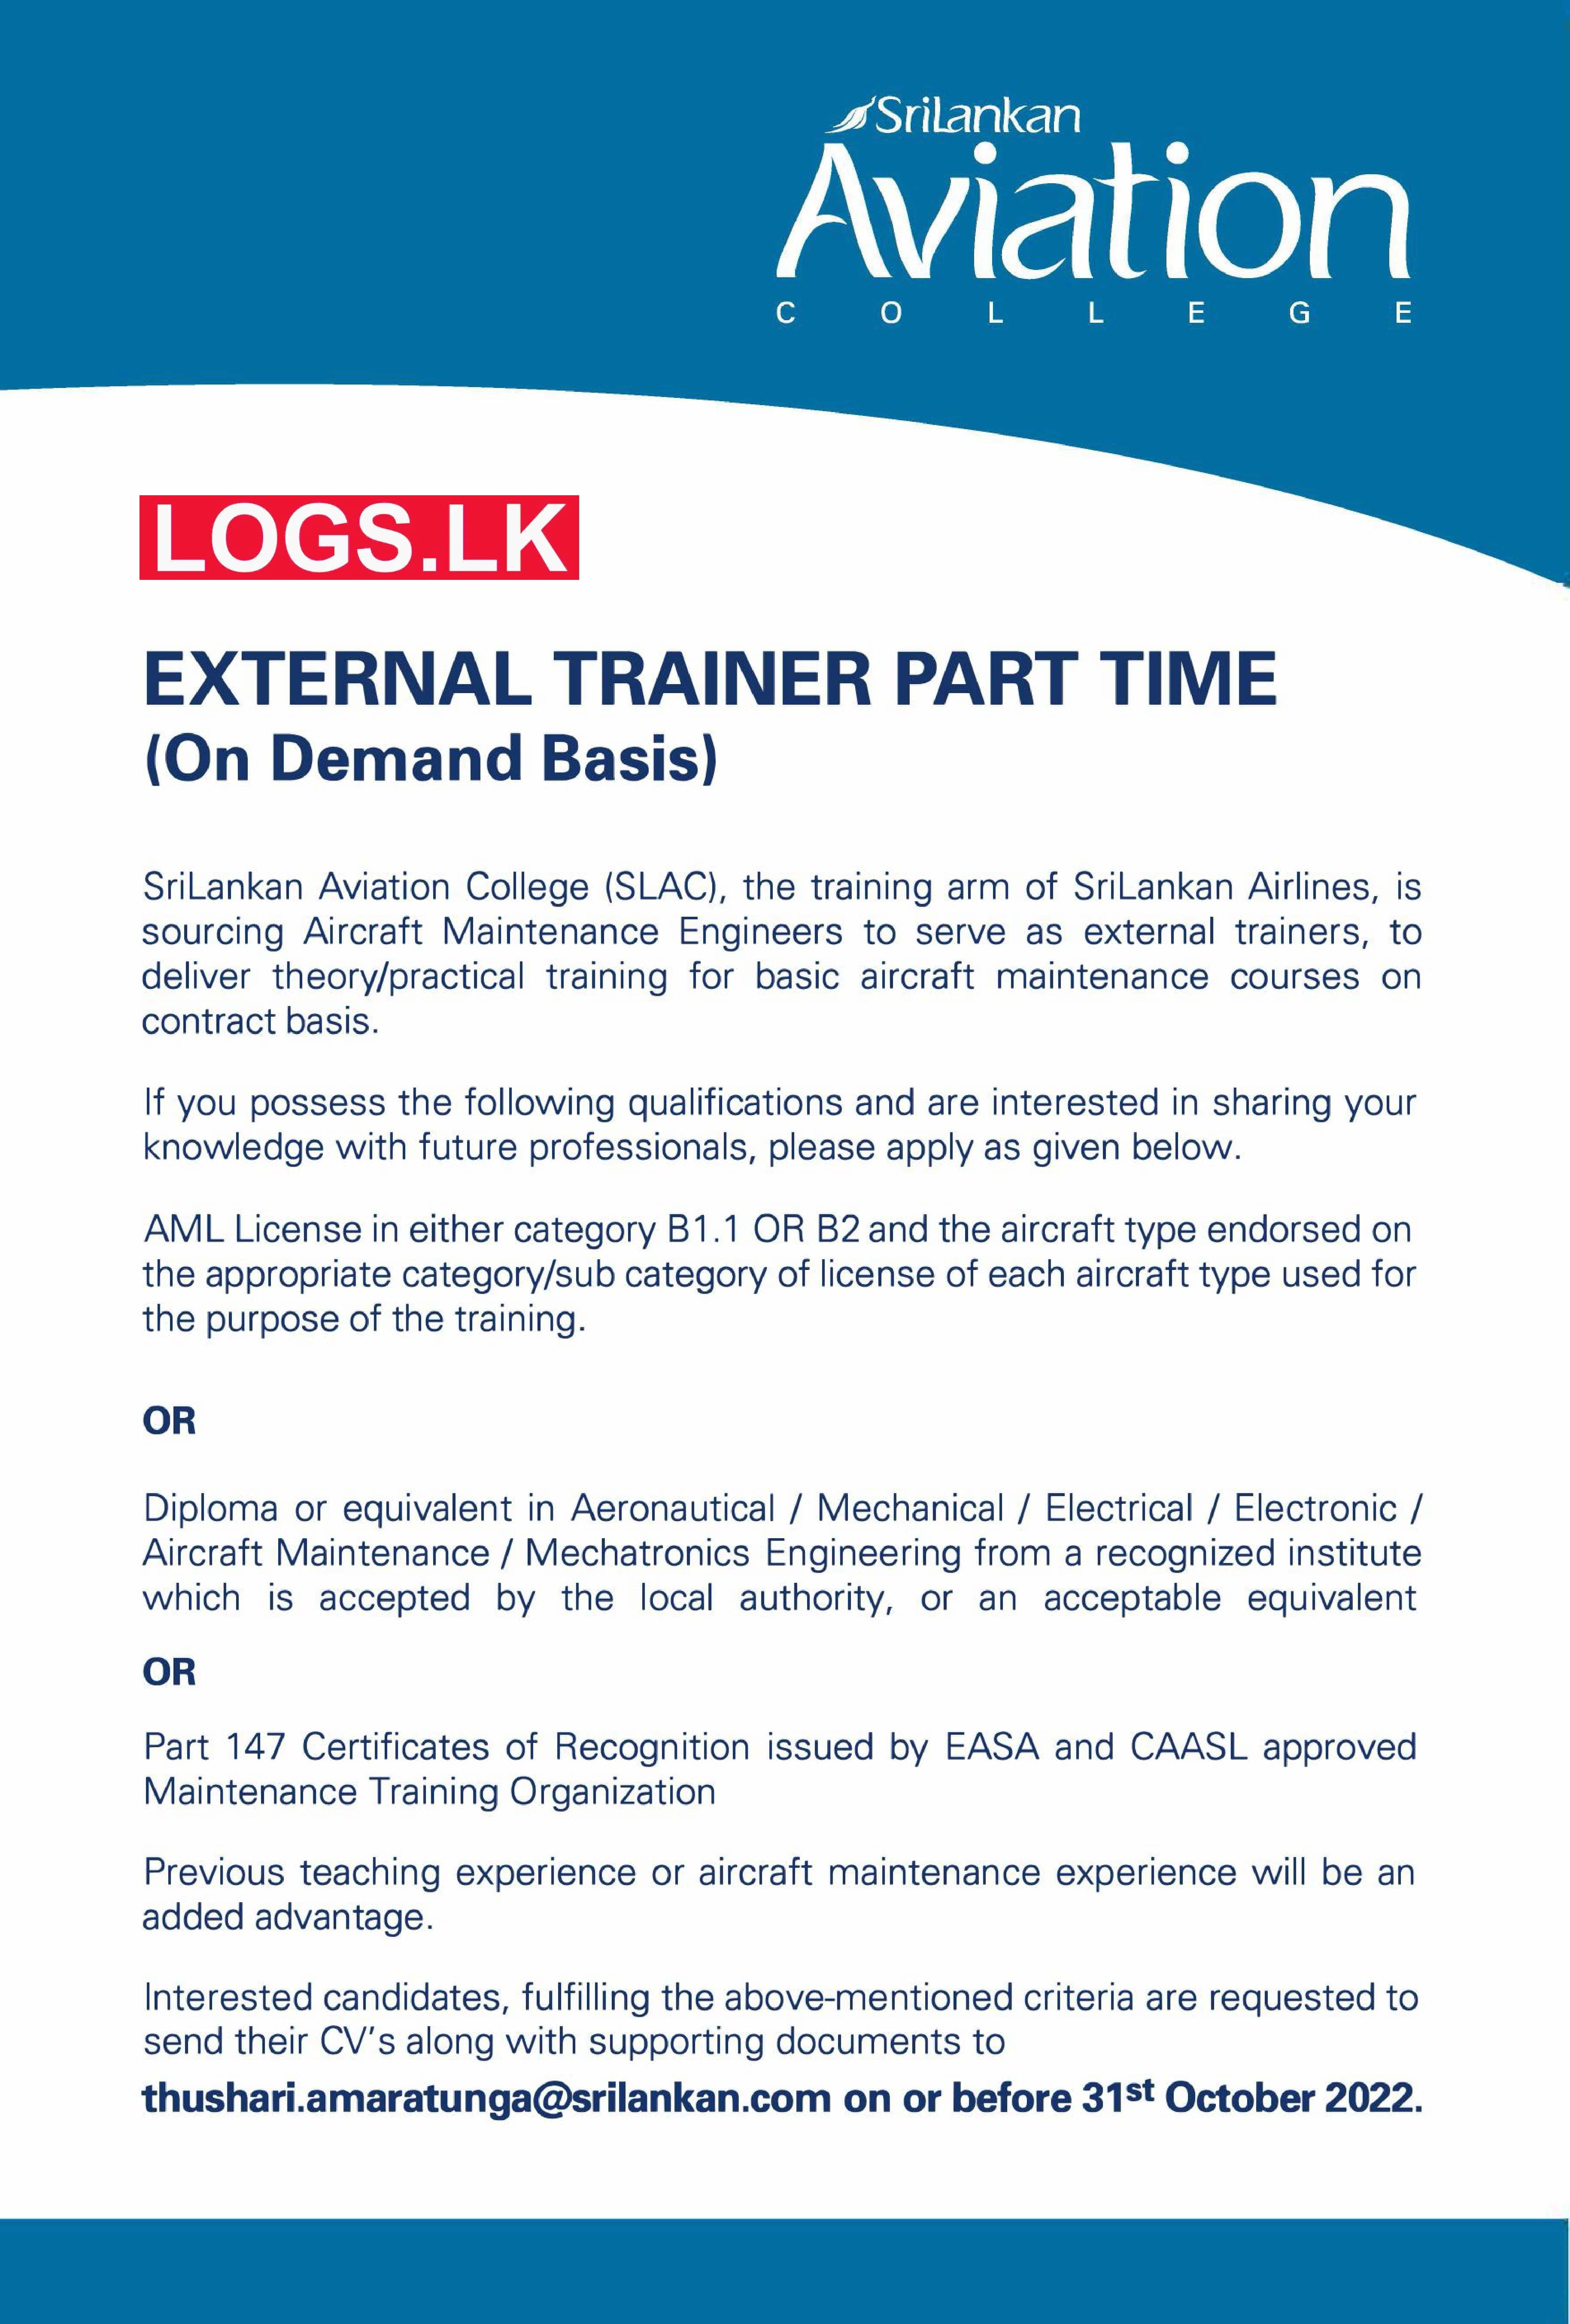 External Trainer Job Vacancies in Sri Lankan Airlines Job Vacancy